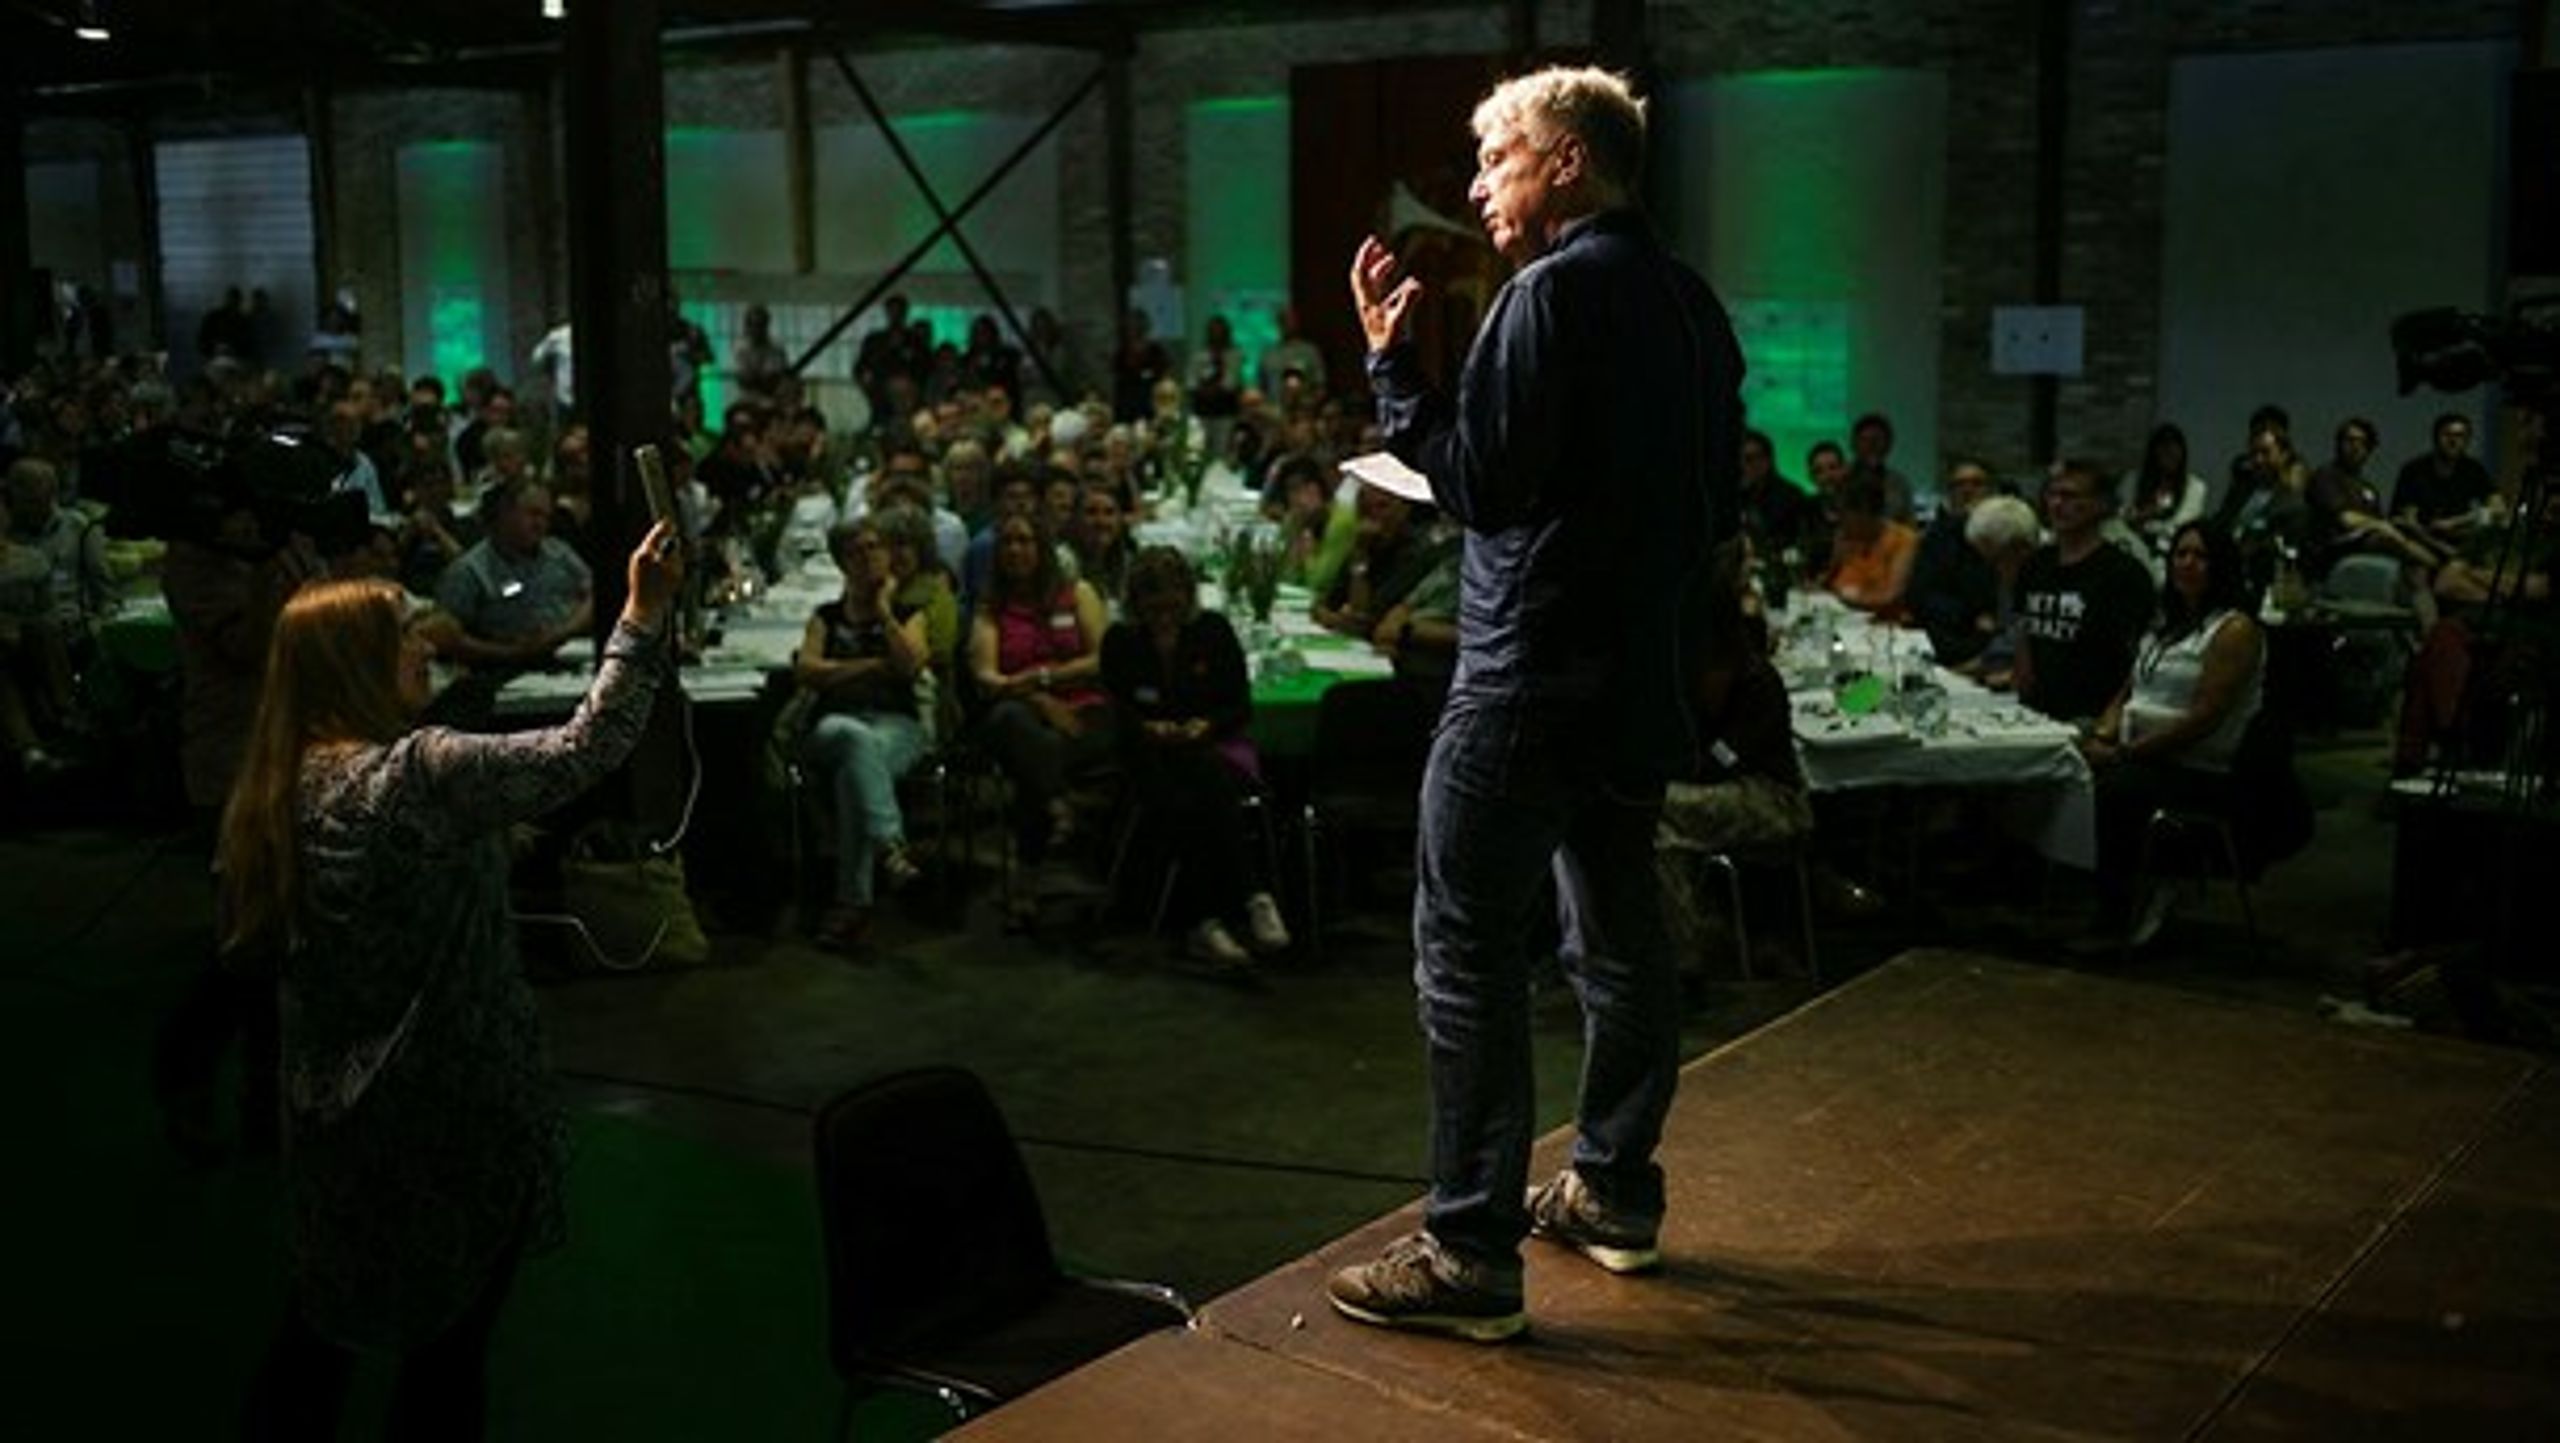 Alternativets politiske leder Uffe Elbæk afgav beretning til 600 af partiets medlemmer ved årsmødet i Odense.